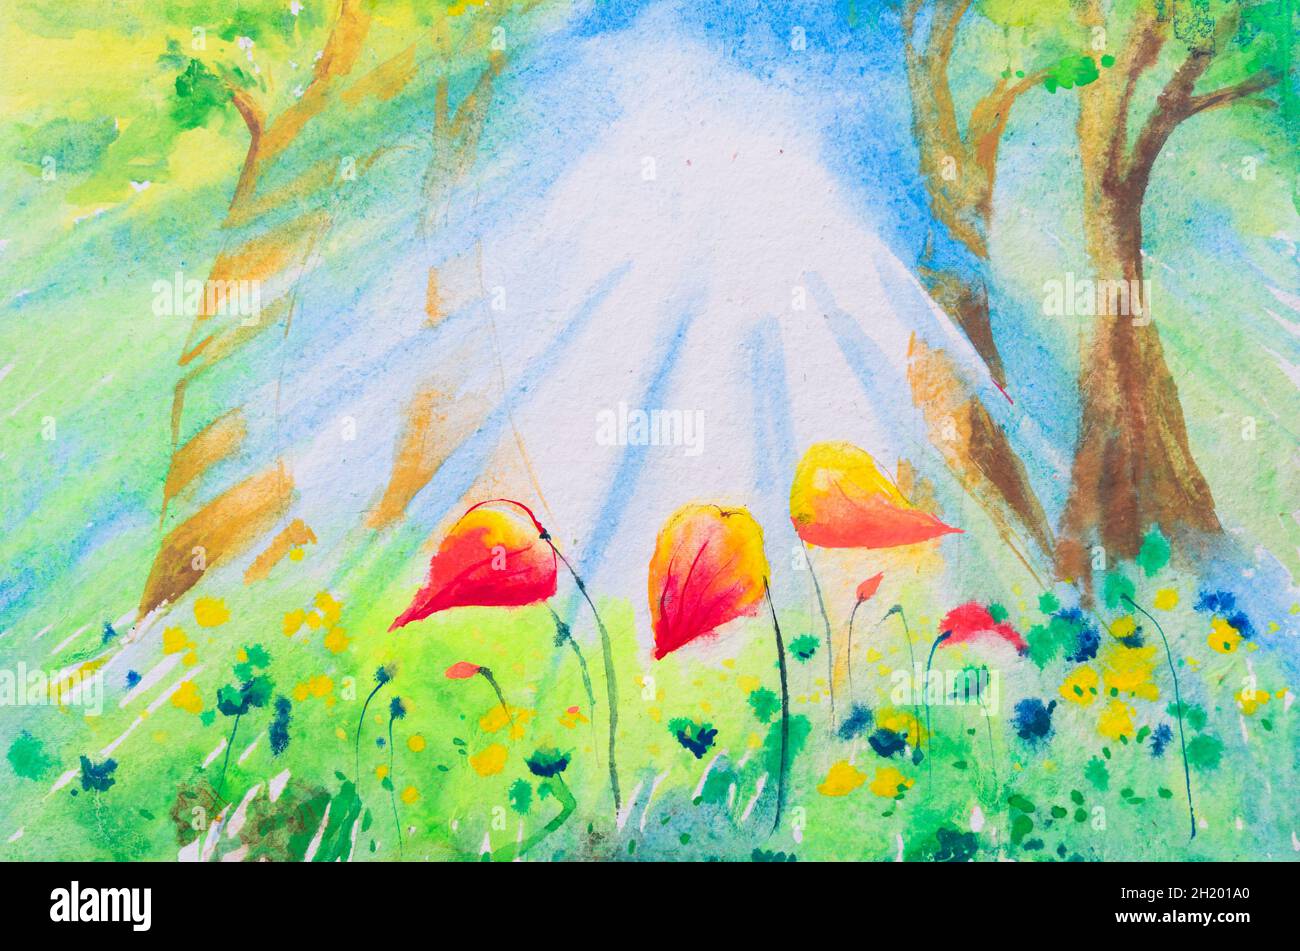 Belle peinture aquarelle d'une forêt lumineuse avec des poutres de soleil. Aquarelle peinte à la main Illustration de l'espoir Photo Stock - Alamy